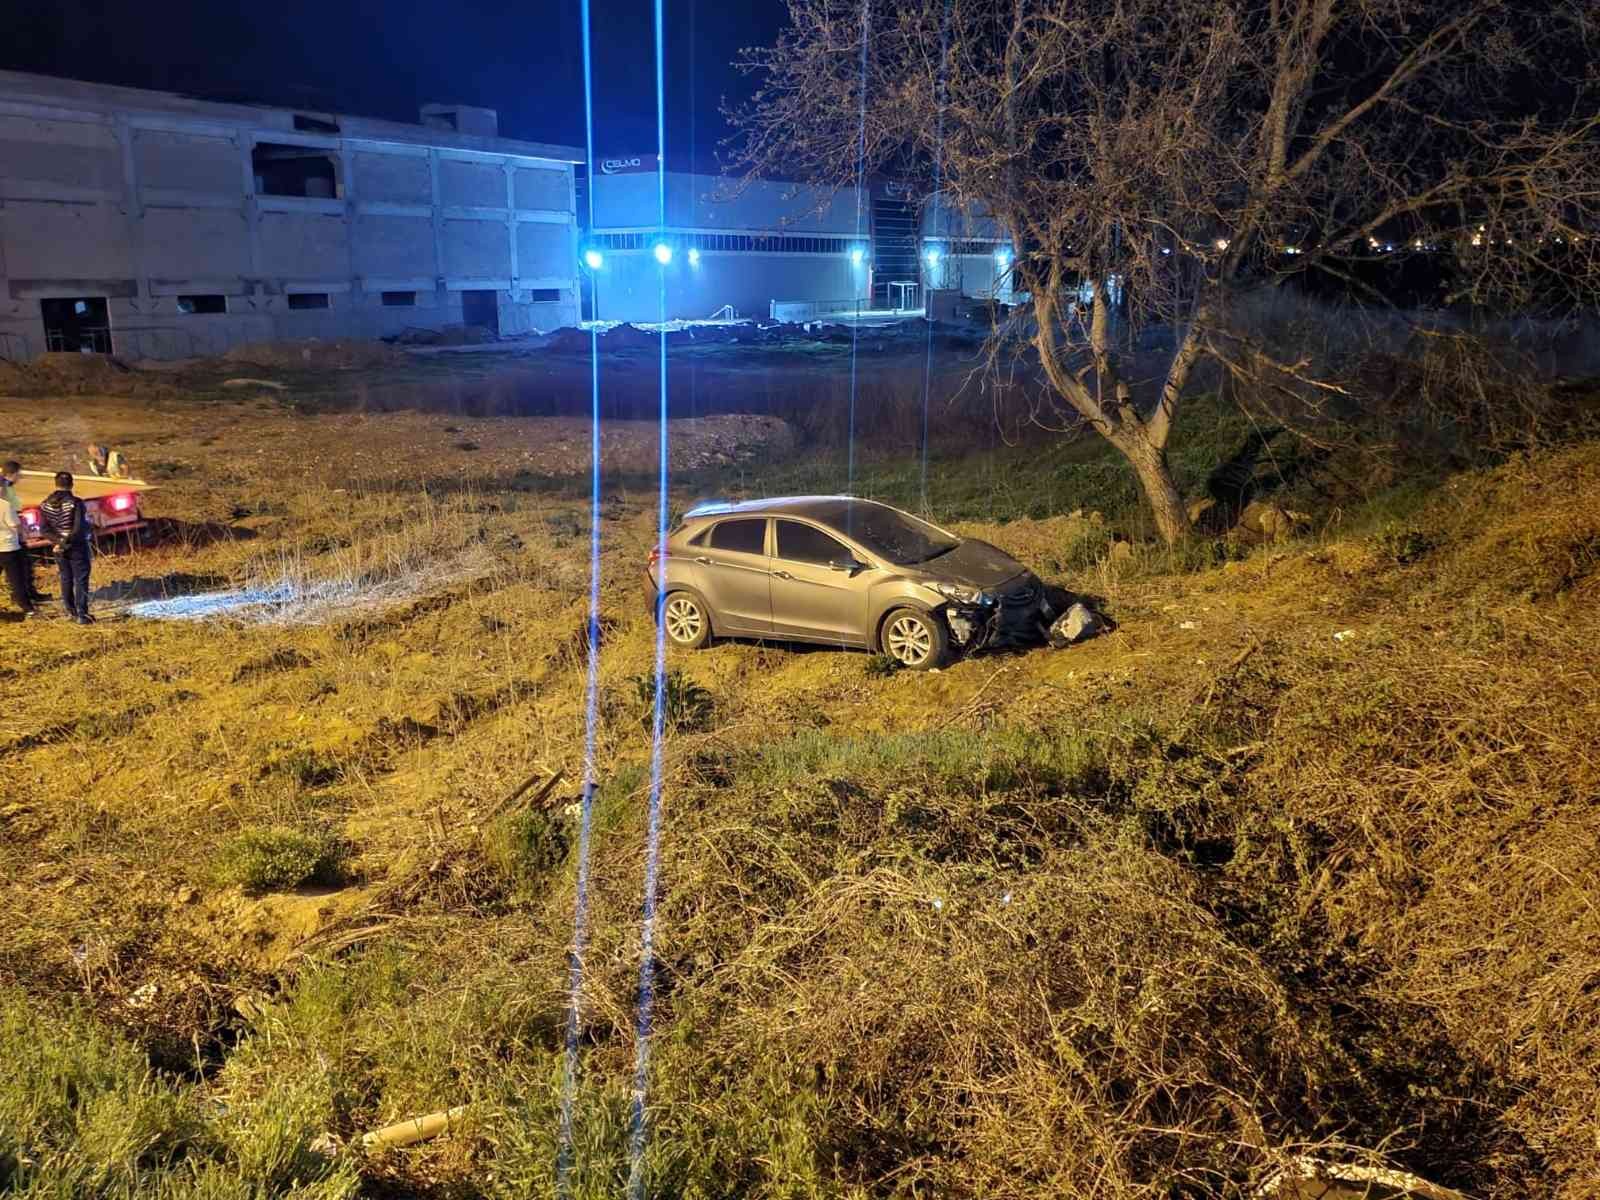 Bursa’nın İnegöl ilçesinde meydana gelen kazada köpeğe çarpan otomobil, şarampole uçtu; sürücüsü yaralandı. Kaza Bursa-Ankara karayolu üzeri ...